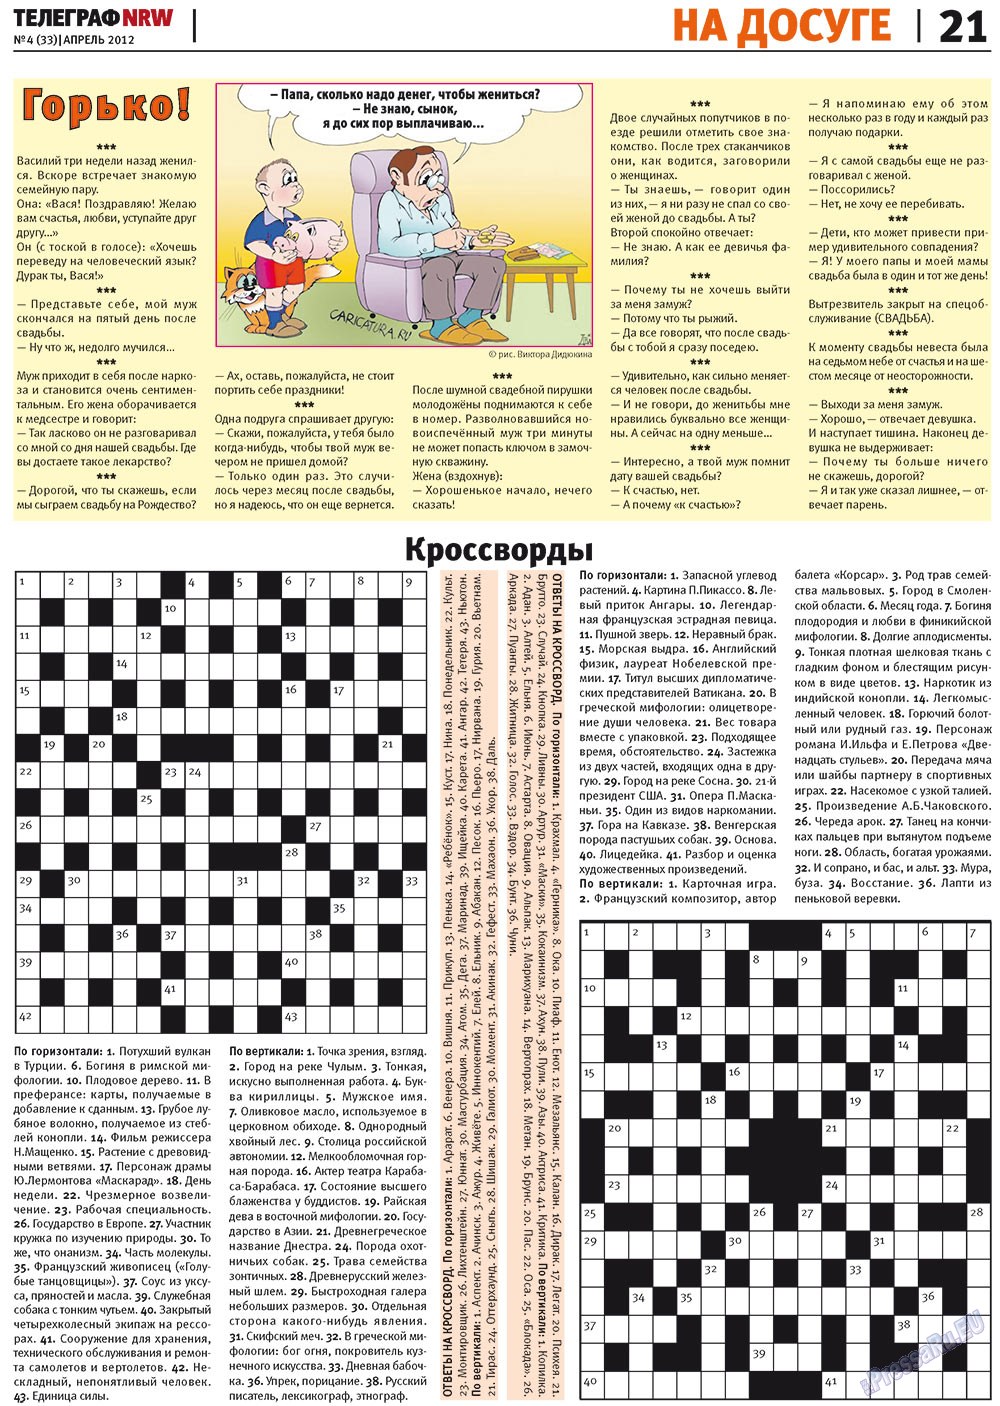 Телеграф NRW (газета). 2012 год, номер 4, стр. 21